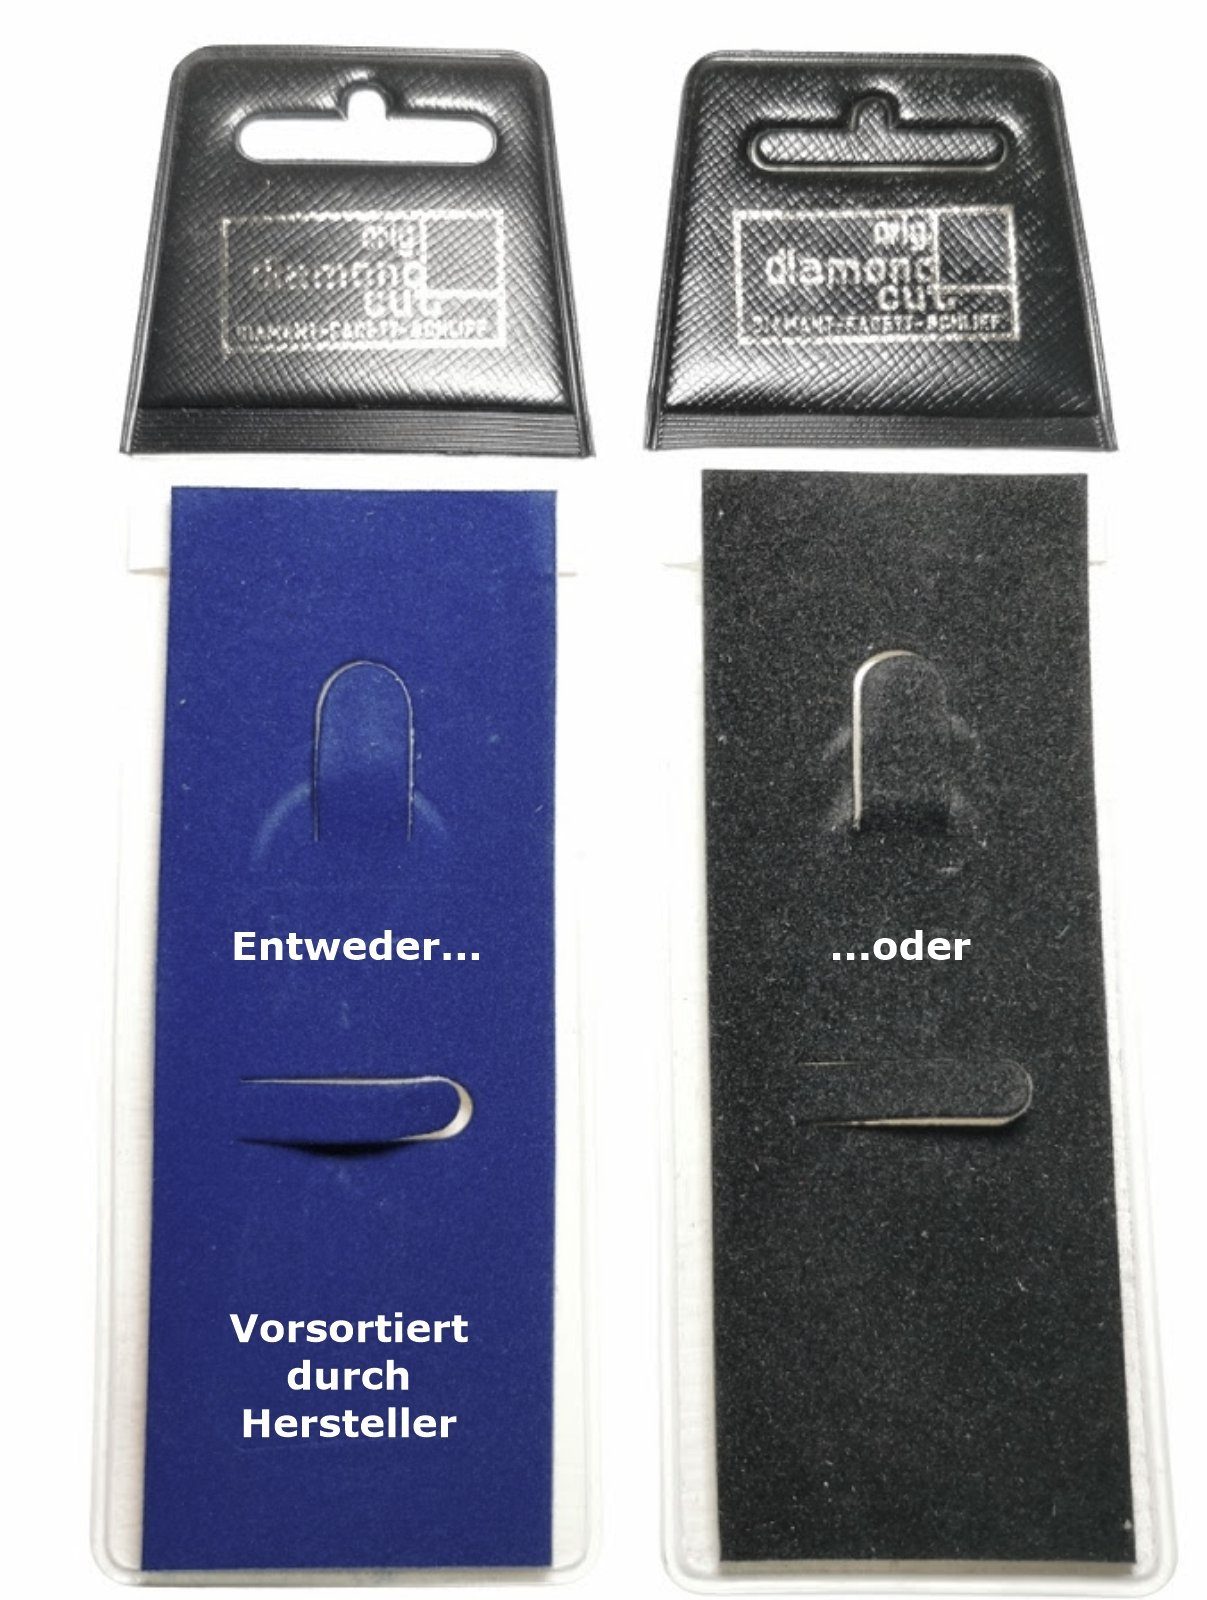 orig. STANDARD Diamantschliff Autocomfort HR Schlüsselanhänger TRIUMPH 1958 Anhänger Metall Schlüsselanhänger